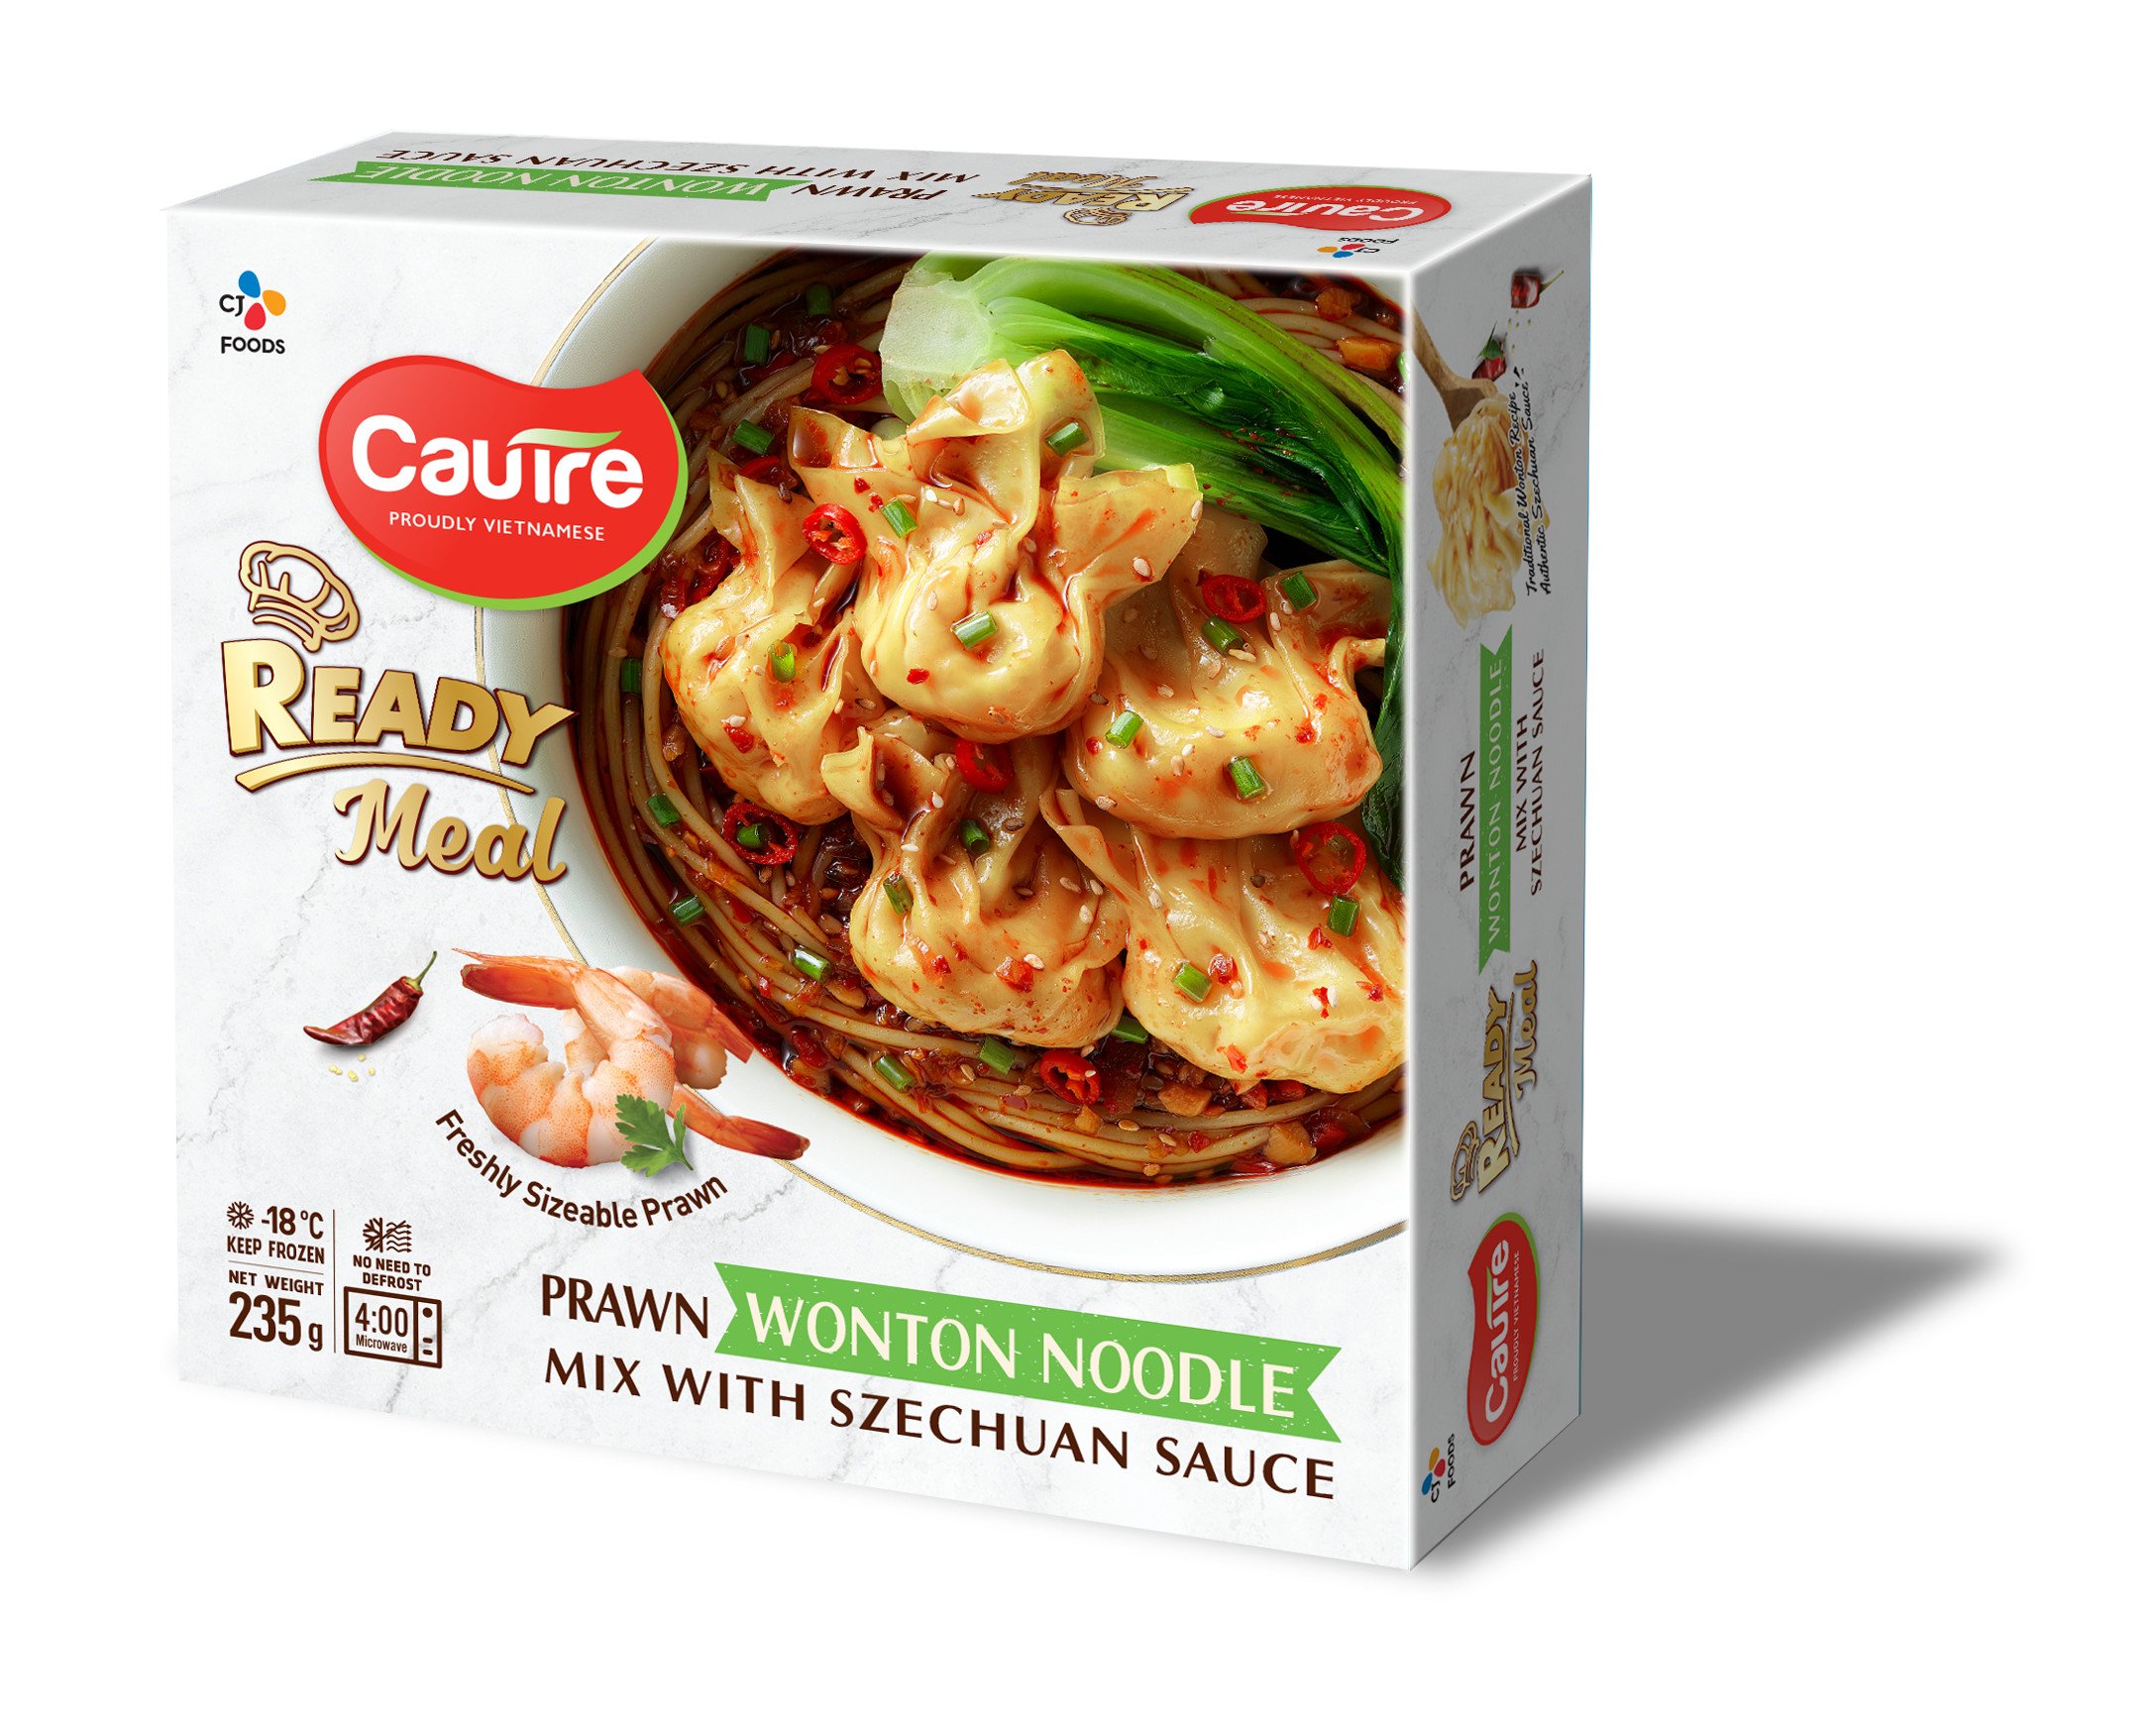 Prawn wonton noodle mix with Szechuan sauce 230g